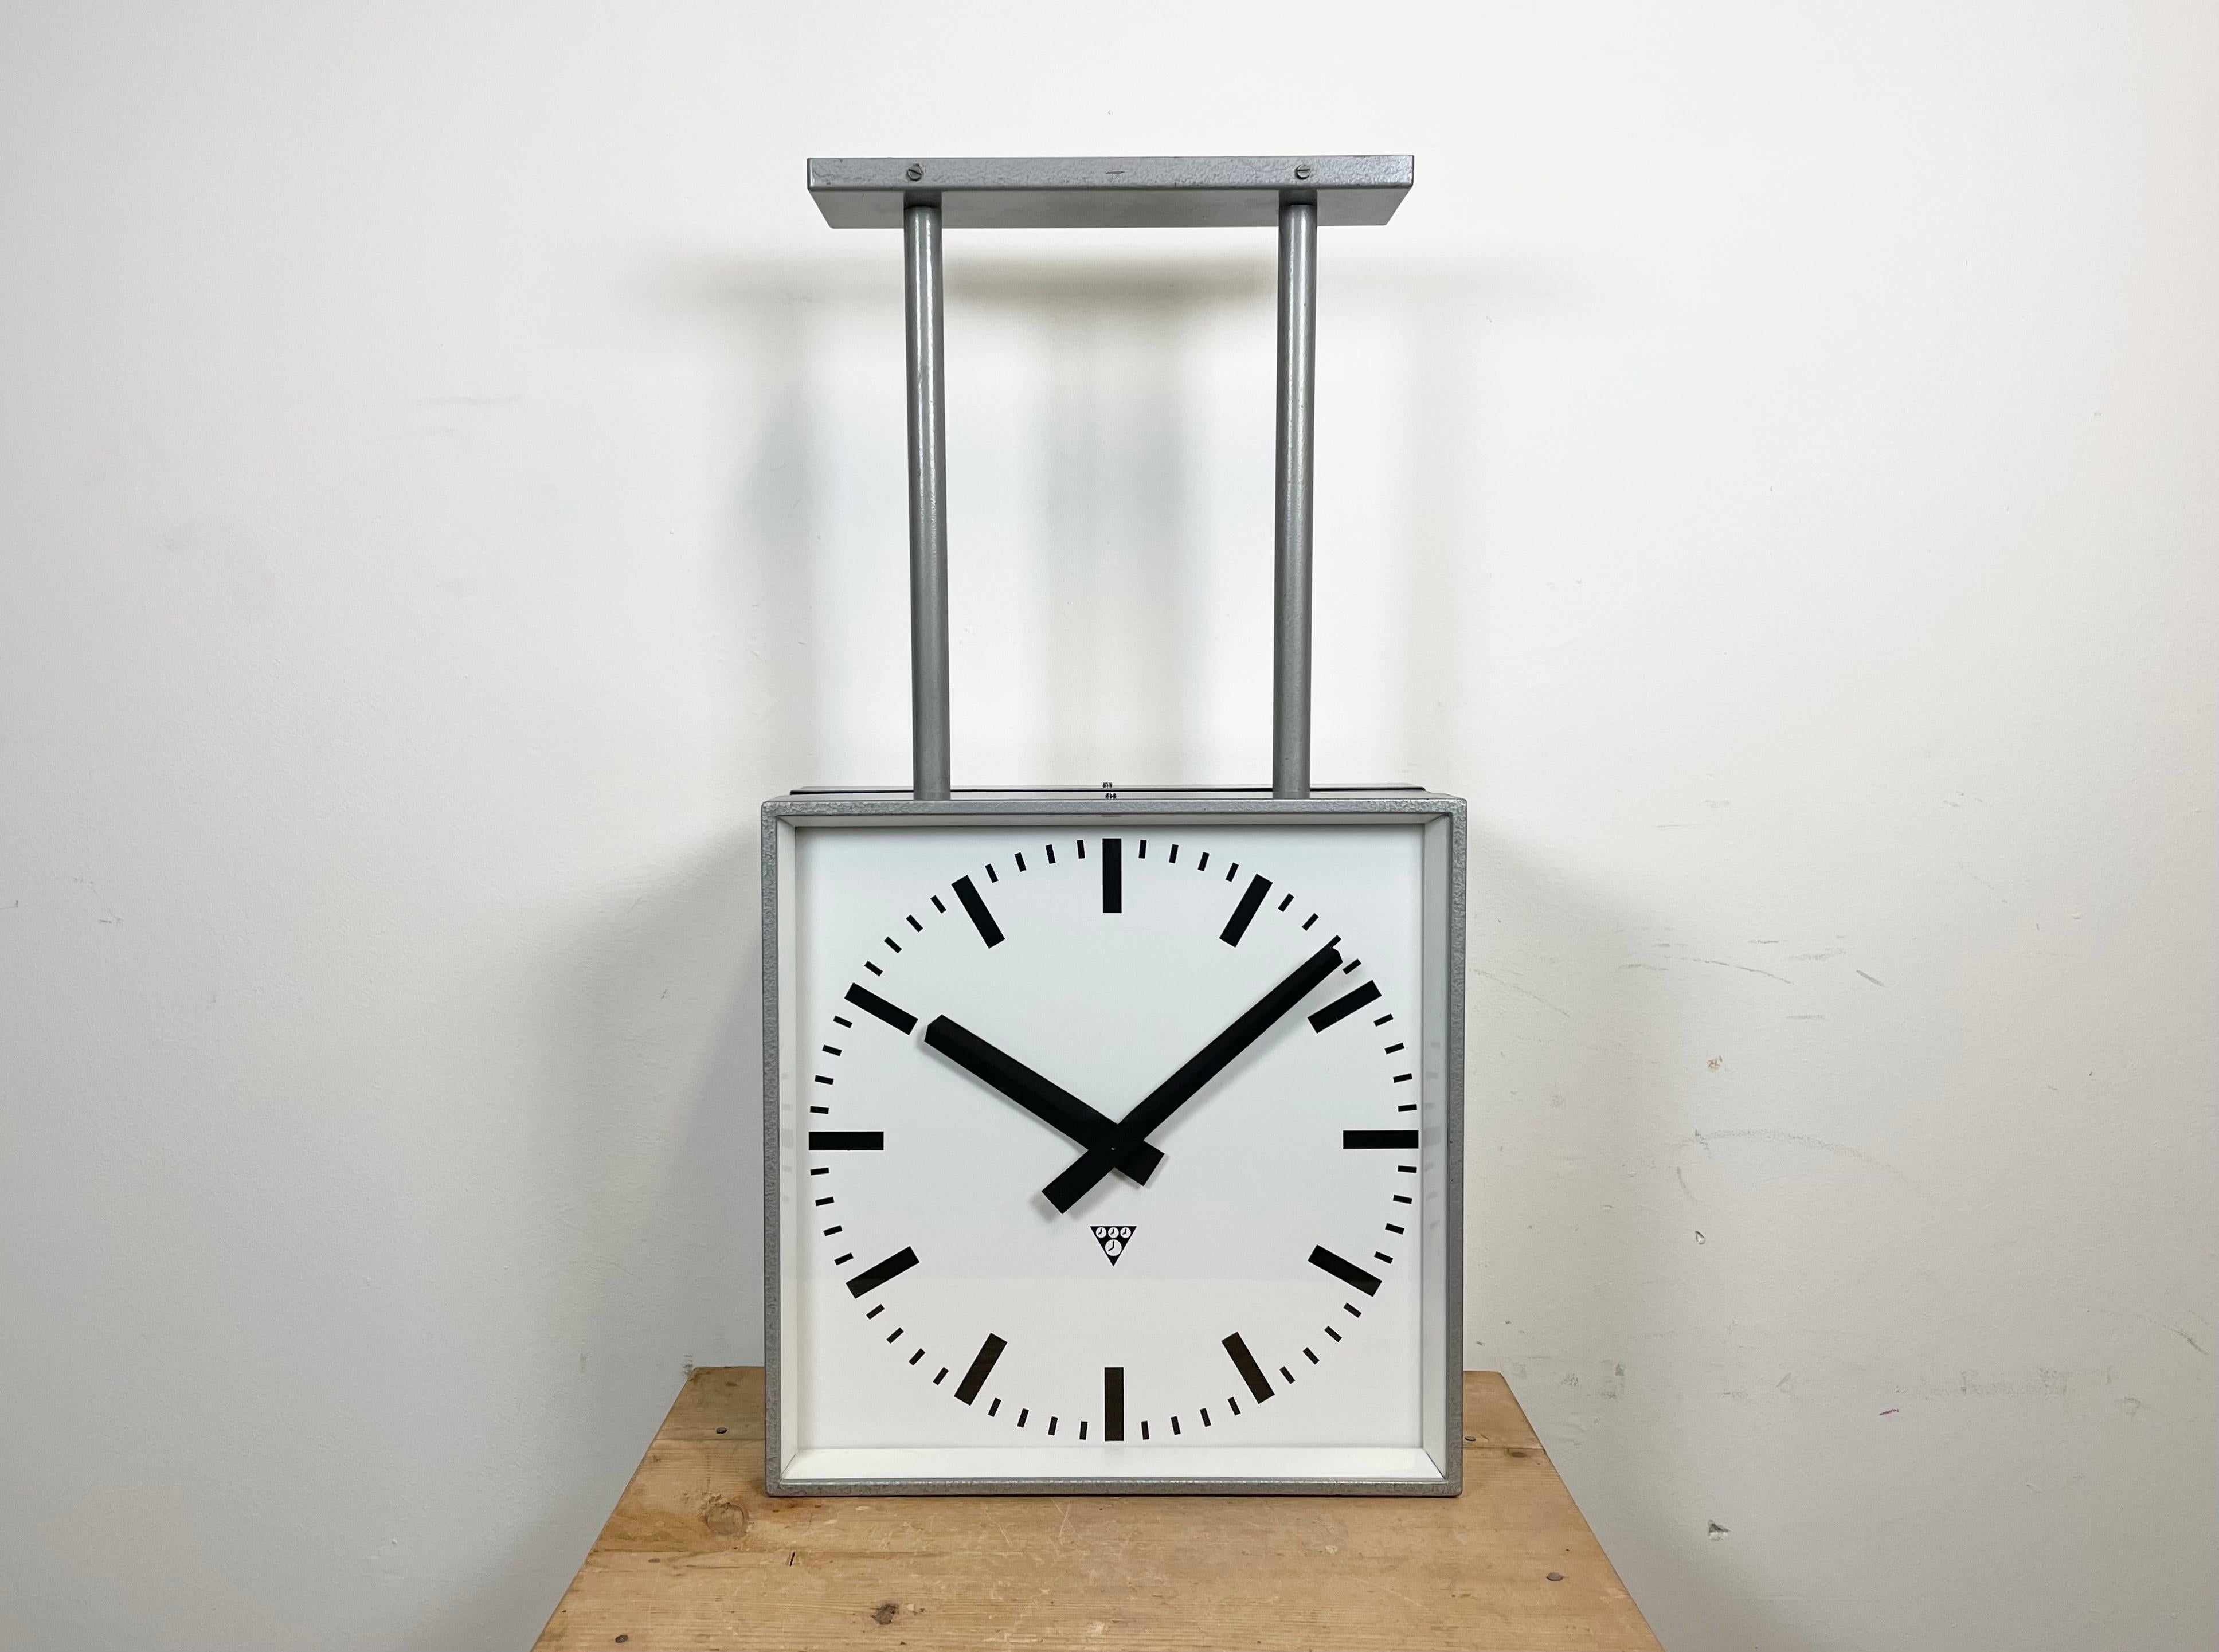 Cette horloge carrée double face pour chemin de fer, école ou usine a été produite par Pragotron, dans l'ancienne Tchécoslovaquie, au cours des années 1970. La pièce est composée d'un corps en métal peint au marteau gris, d'un couvercle en verre